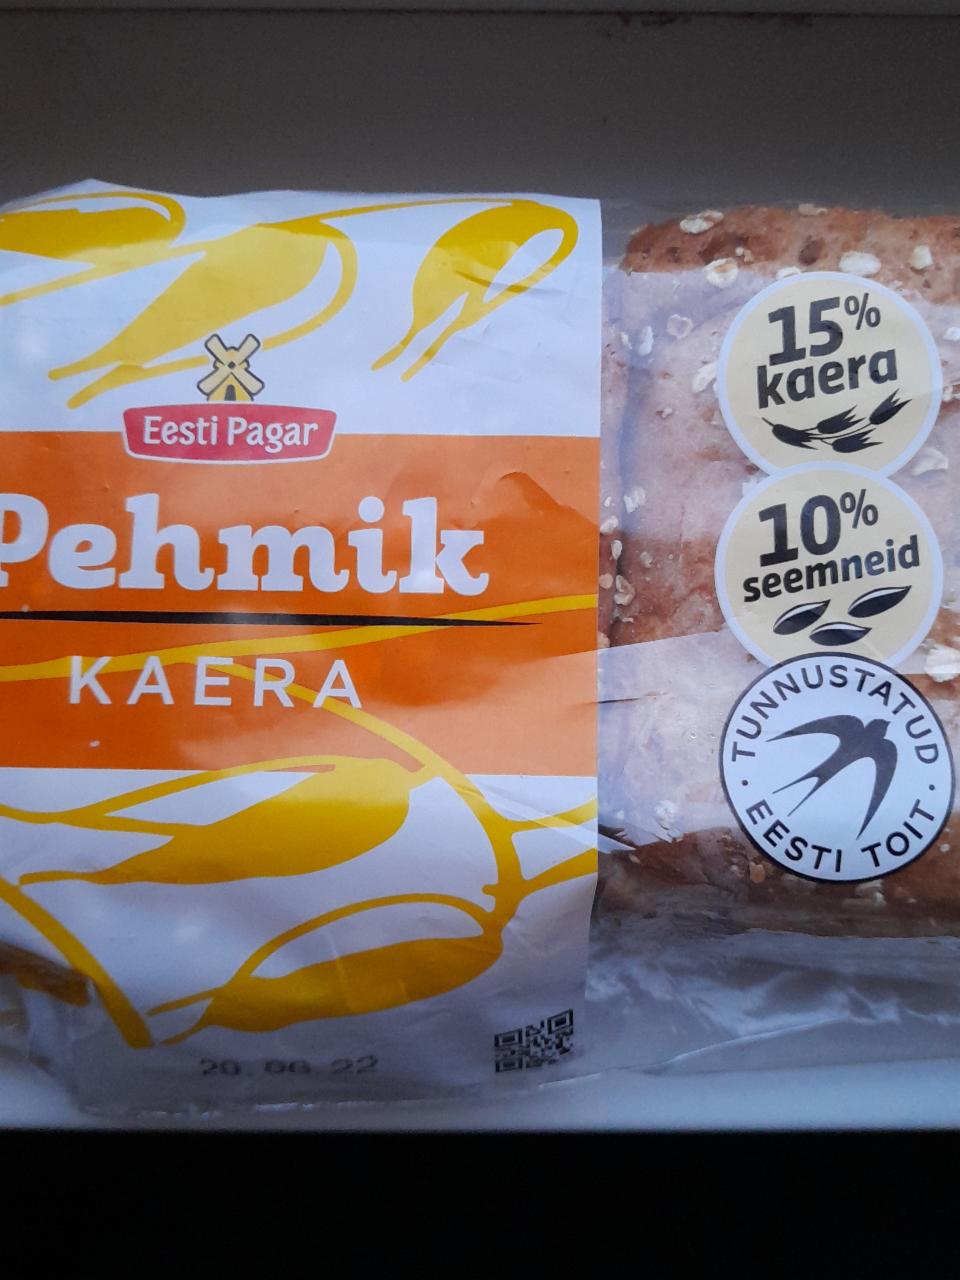 Фото - овсяные хлебцы Eesti pagar